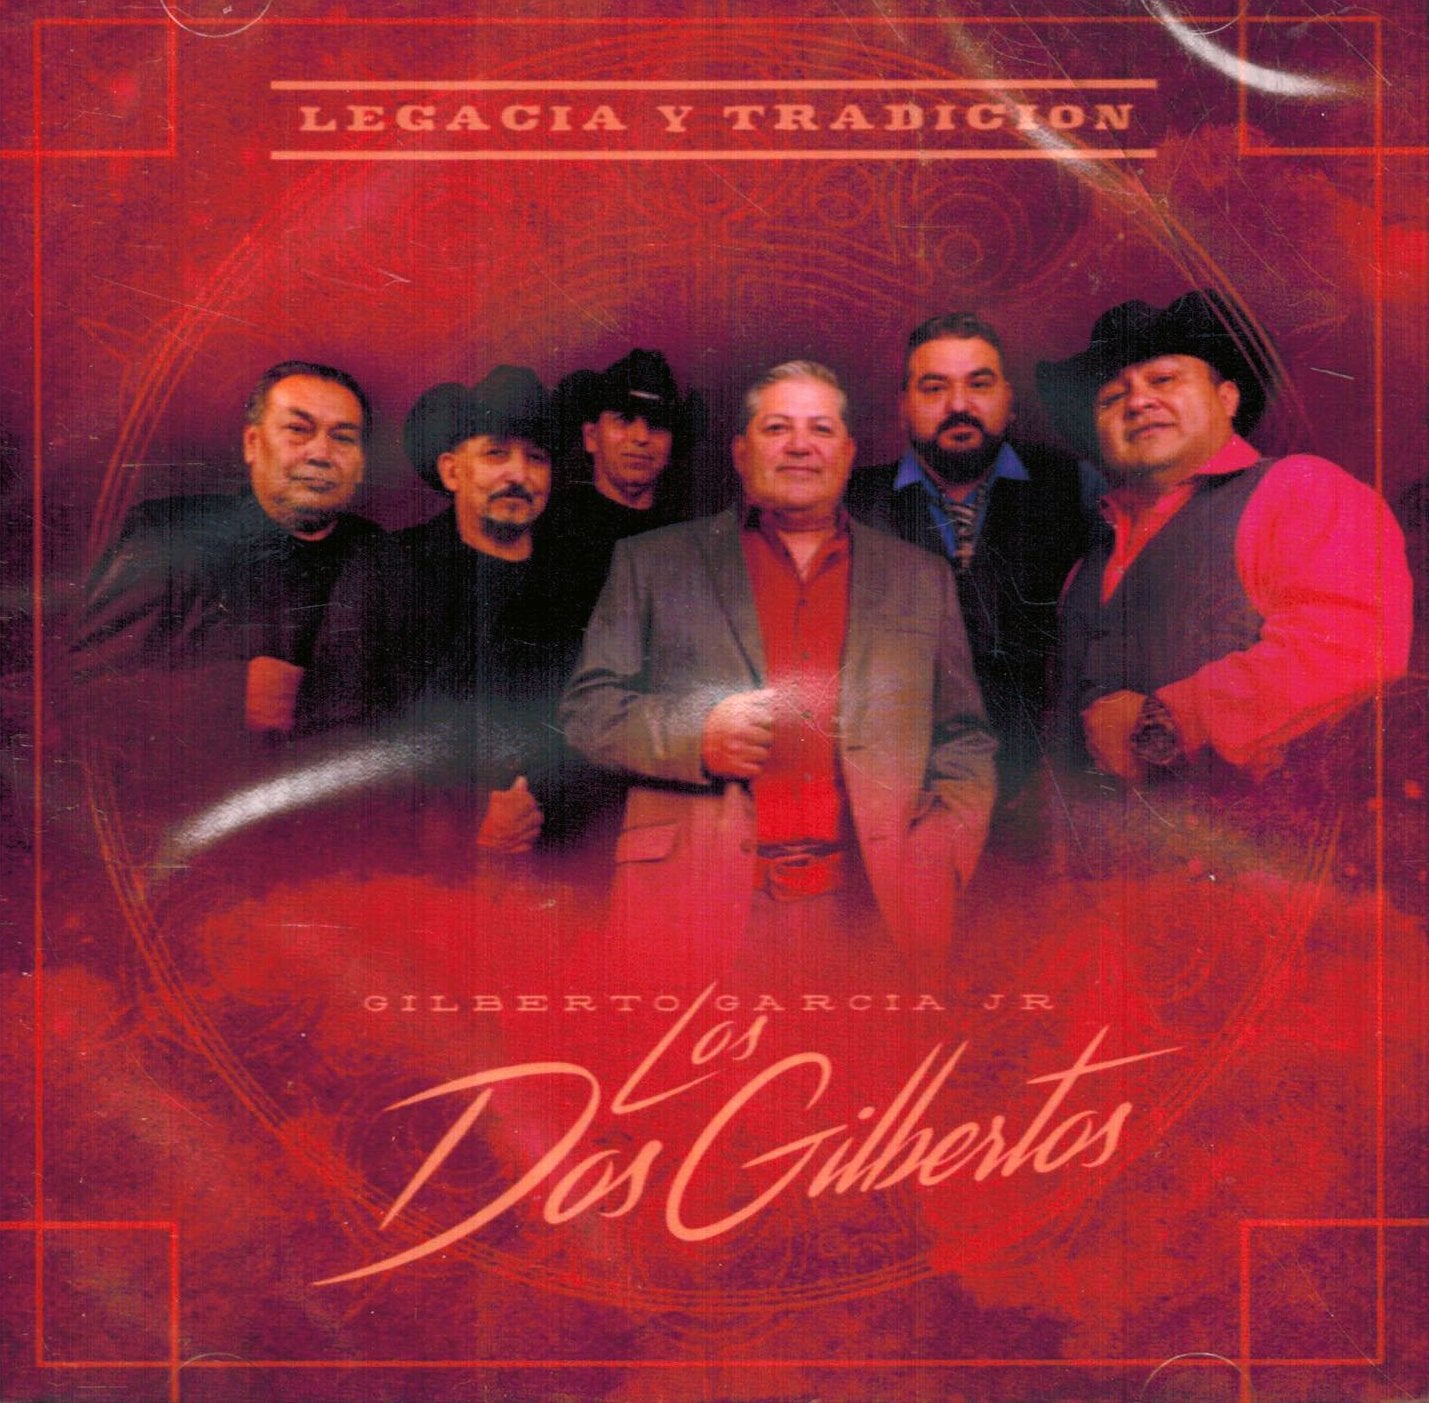 Gilberto Garcia Jr. Y Los Dos Gilbertos - Legacia Y Tradicion